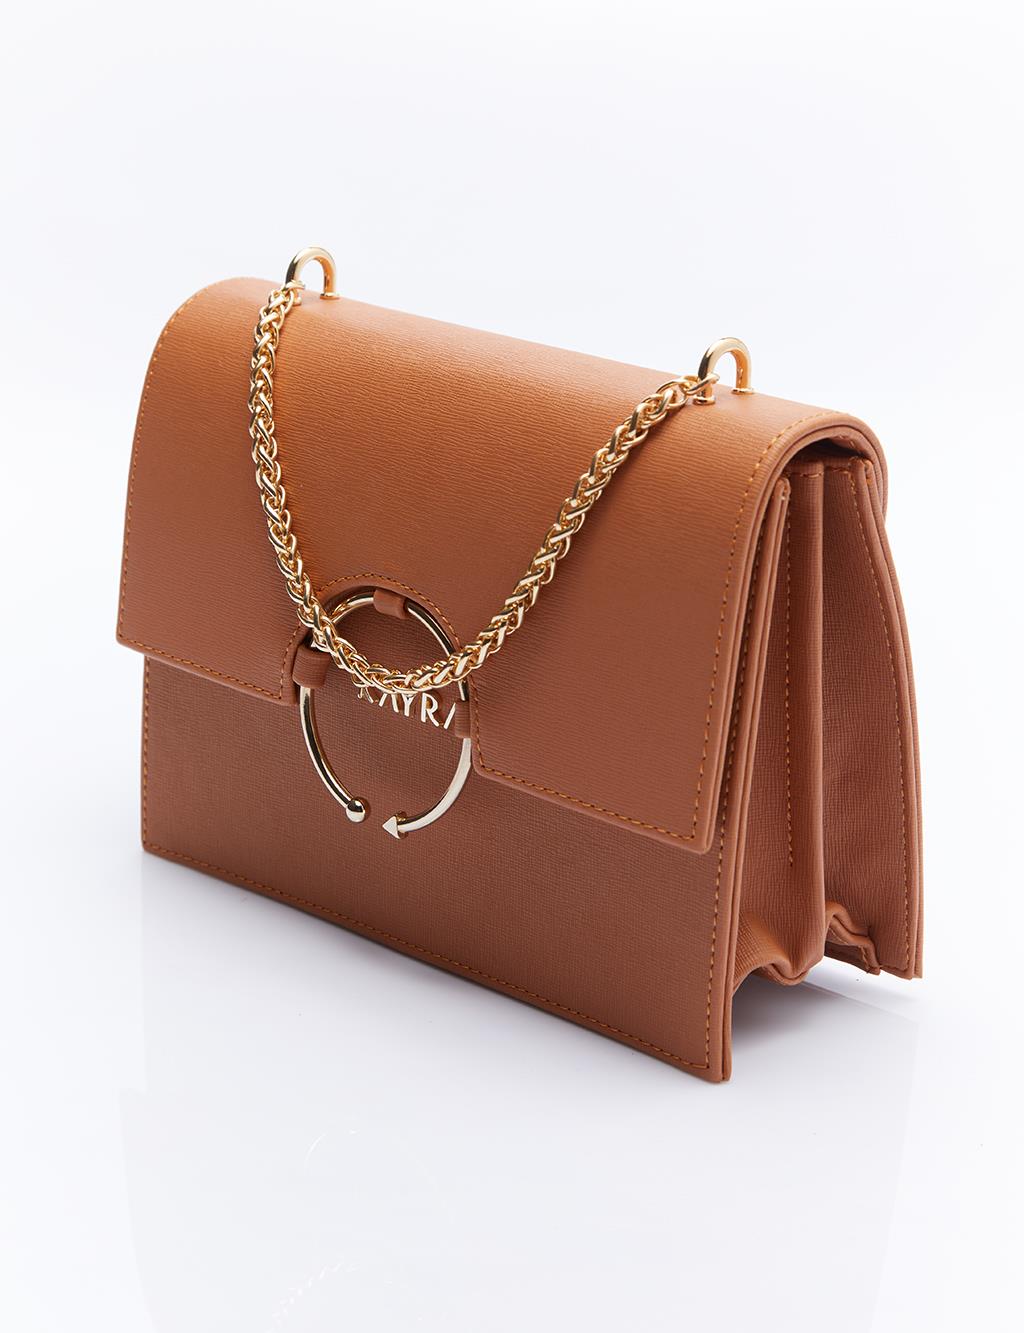 Дизайнерская сумка с ручкой-цепочкой, коричневая Kayra limate taba deri sandalet